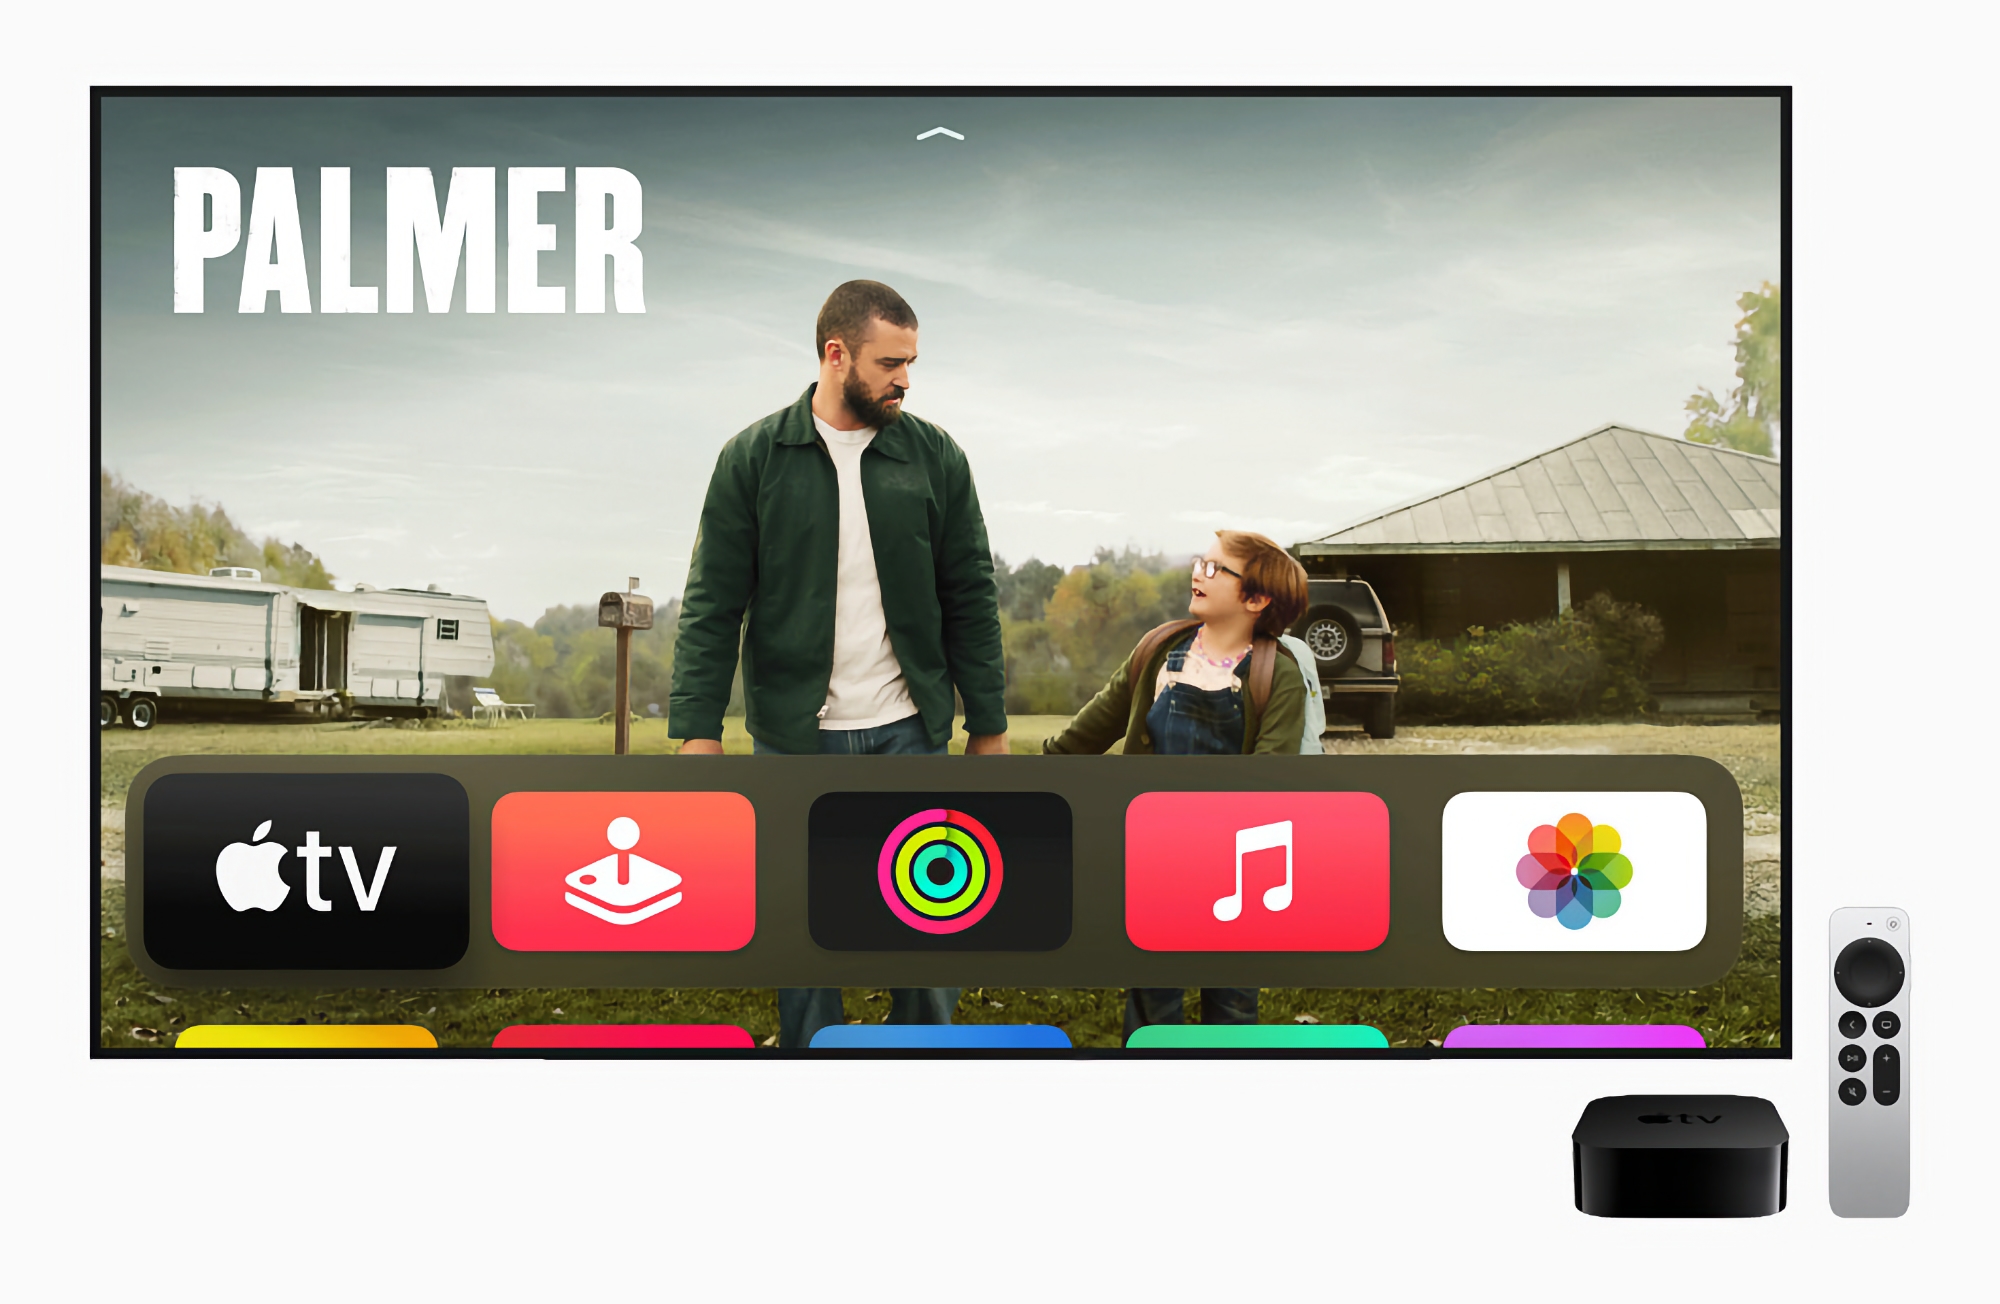 Kaufen Sie es, bevor es weg ist! Apple TV 4K 2021 mit A12 Bionic Chip und 32 GB Speicher für 99 $ auf Amazon verkauft